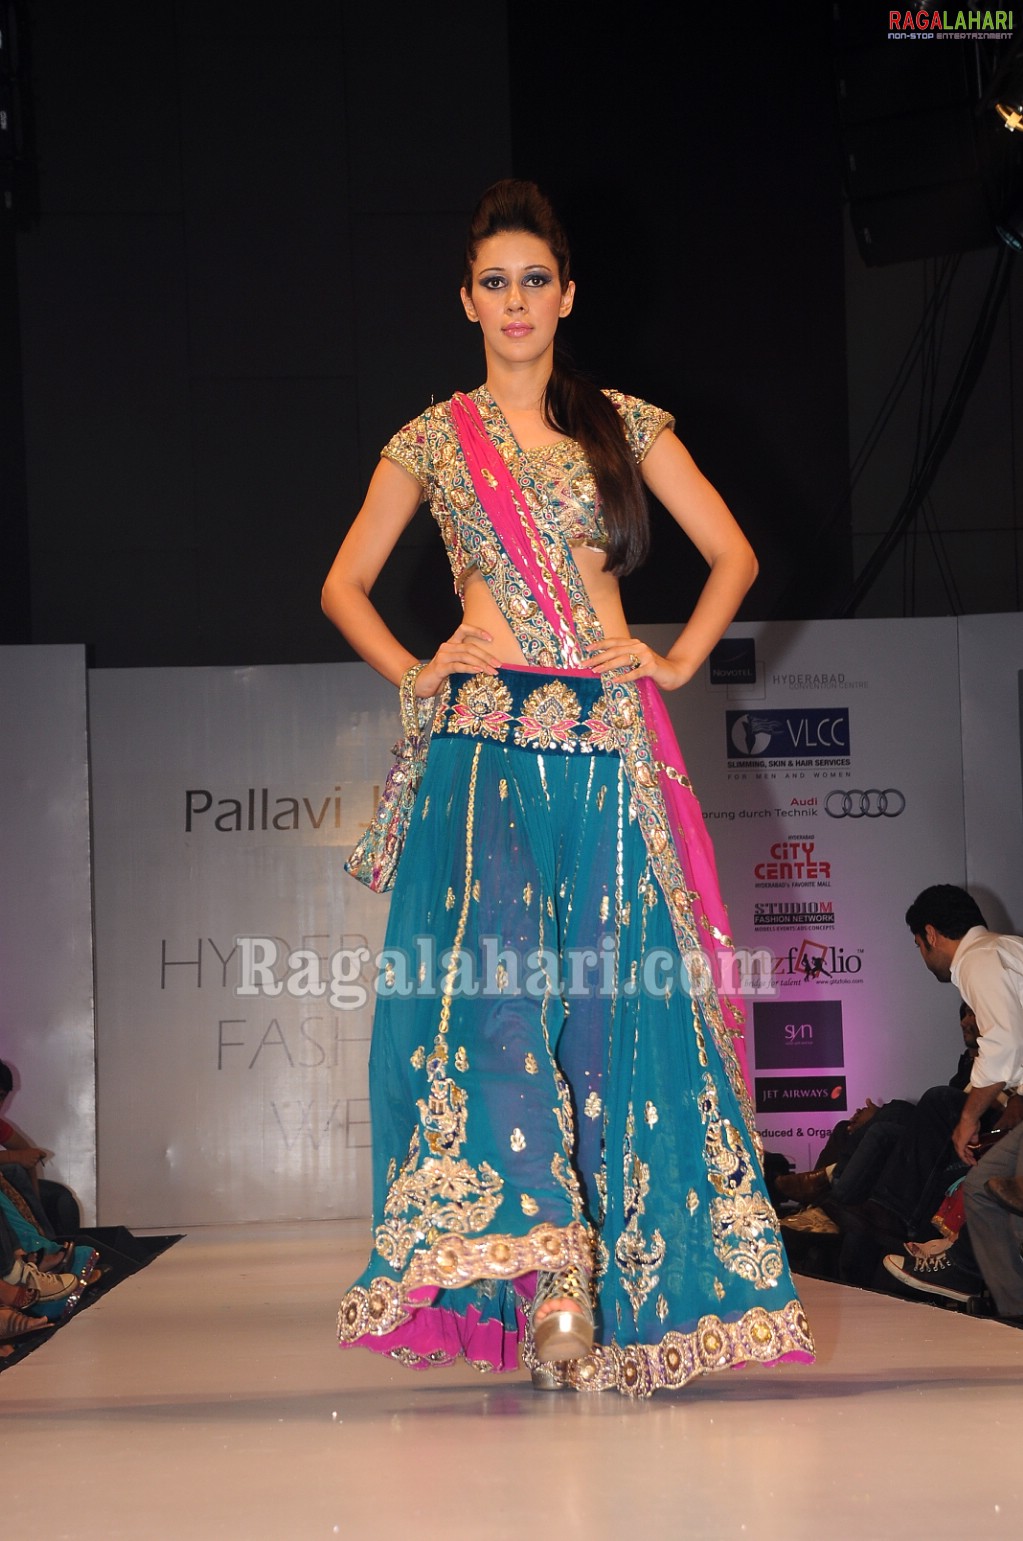 Hyderabad Fashion Week 2010 - Day 3